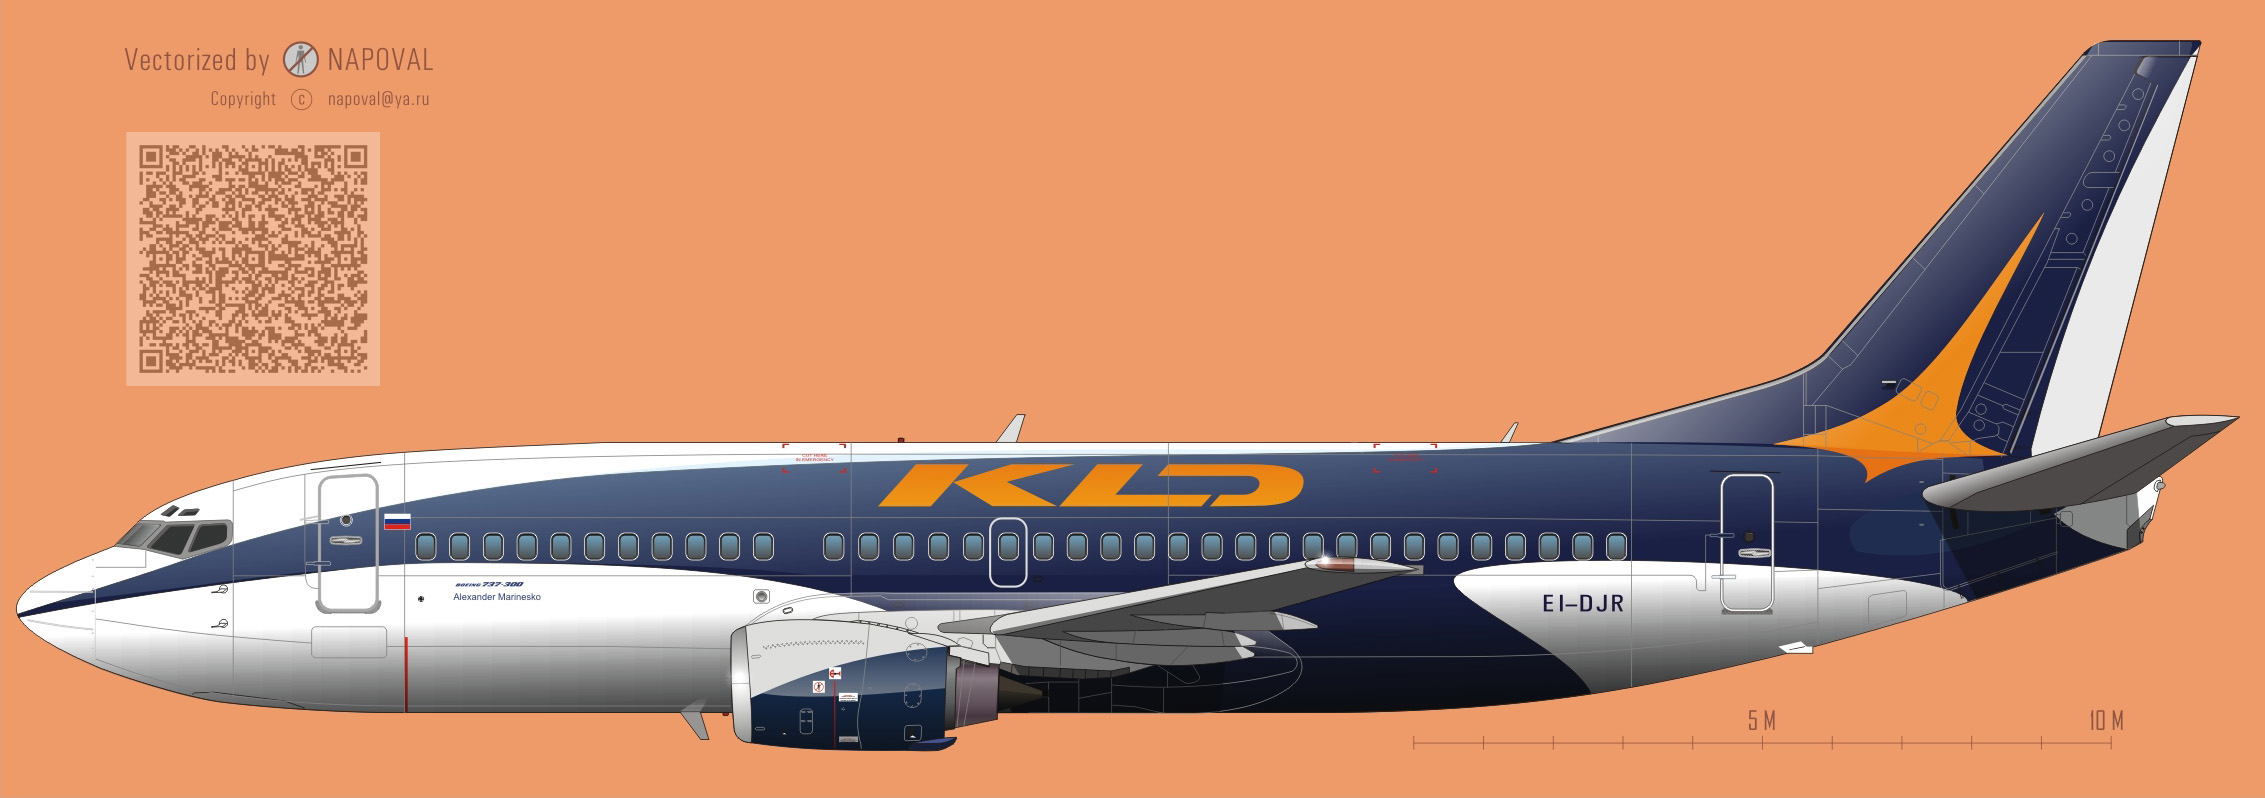 Профиль самолета Boeing 737 EI-DJR (Александр Маринеско) авиакомпании KLD-Калиниградавиа очень большой размер/big size 2266x800